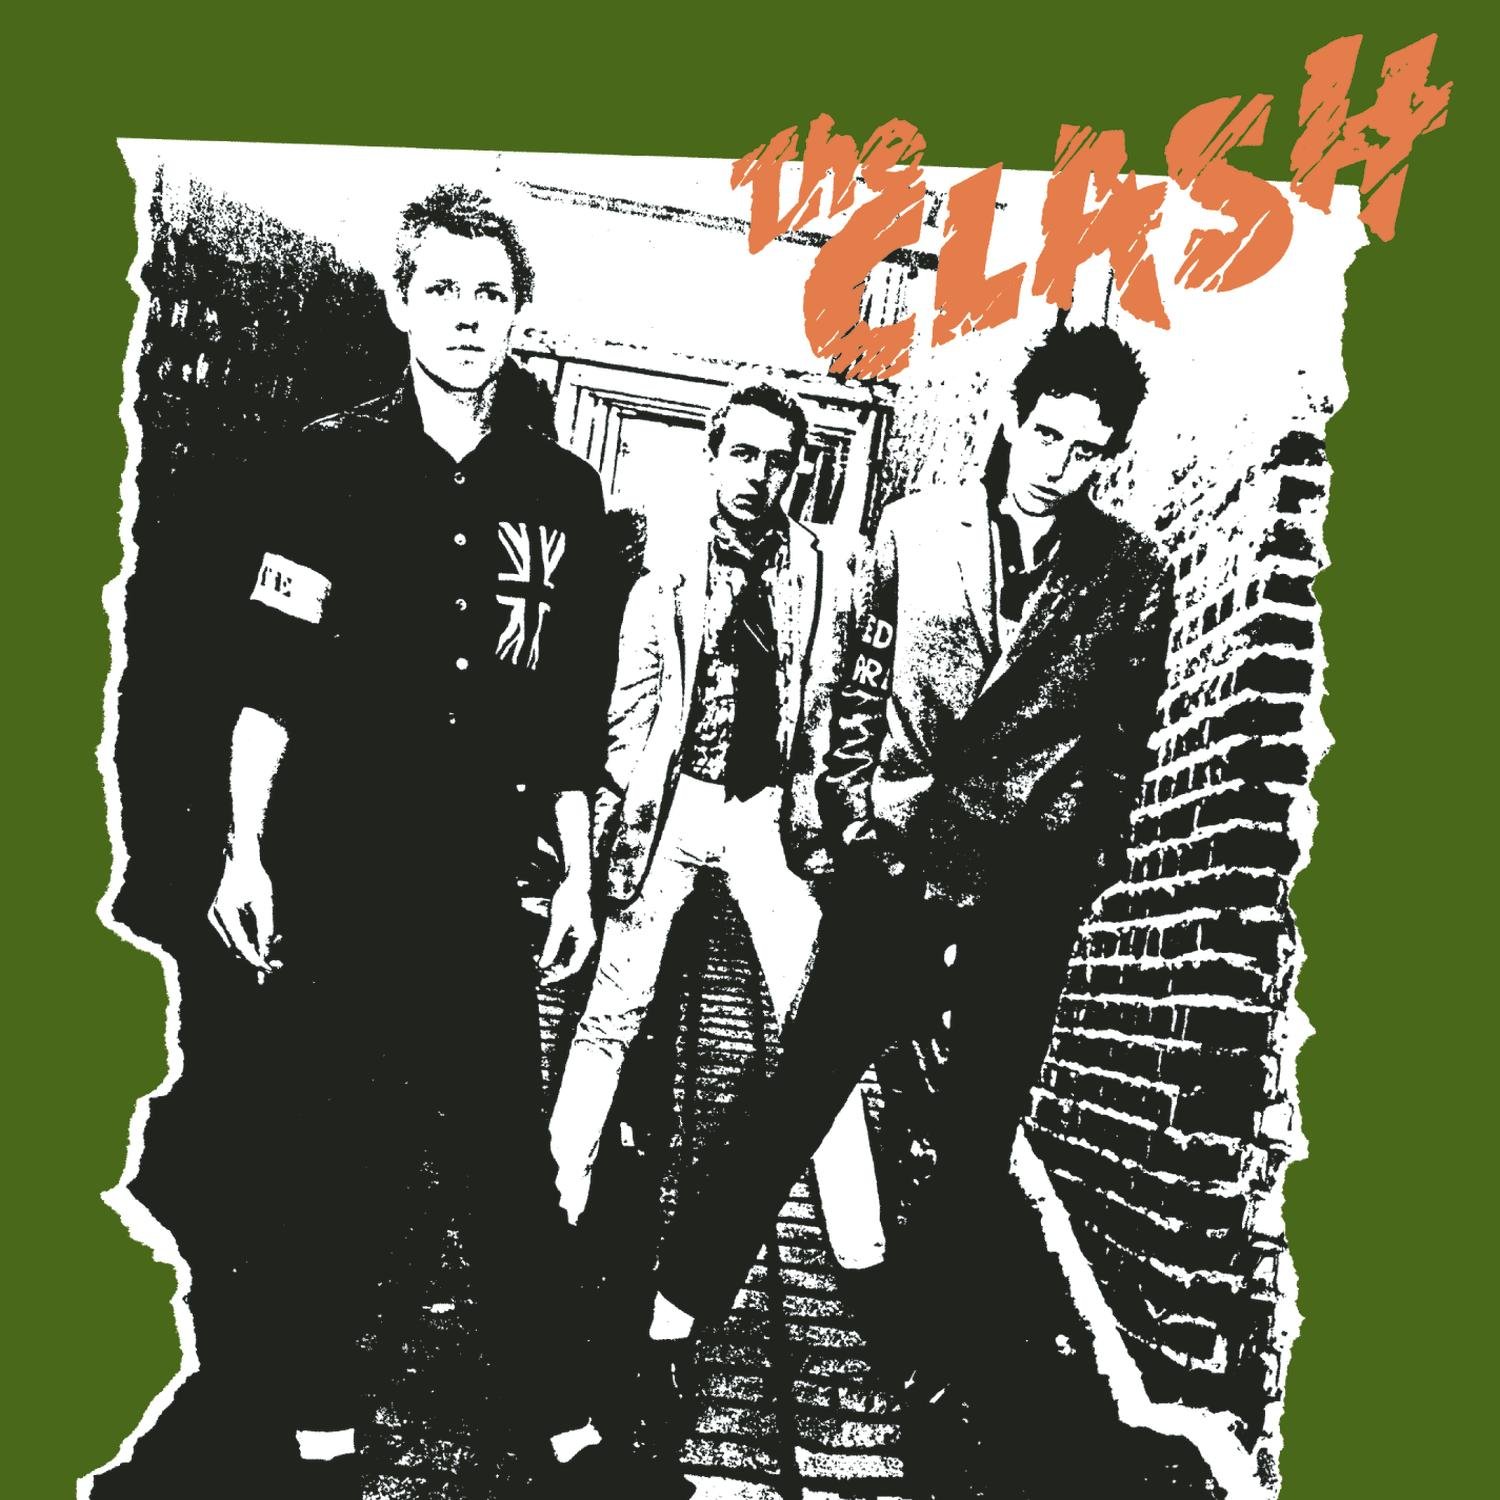 45 éve jelent meg a Clash első albuma, amely megváltoztatta a punk zenét